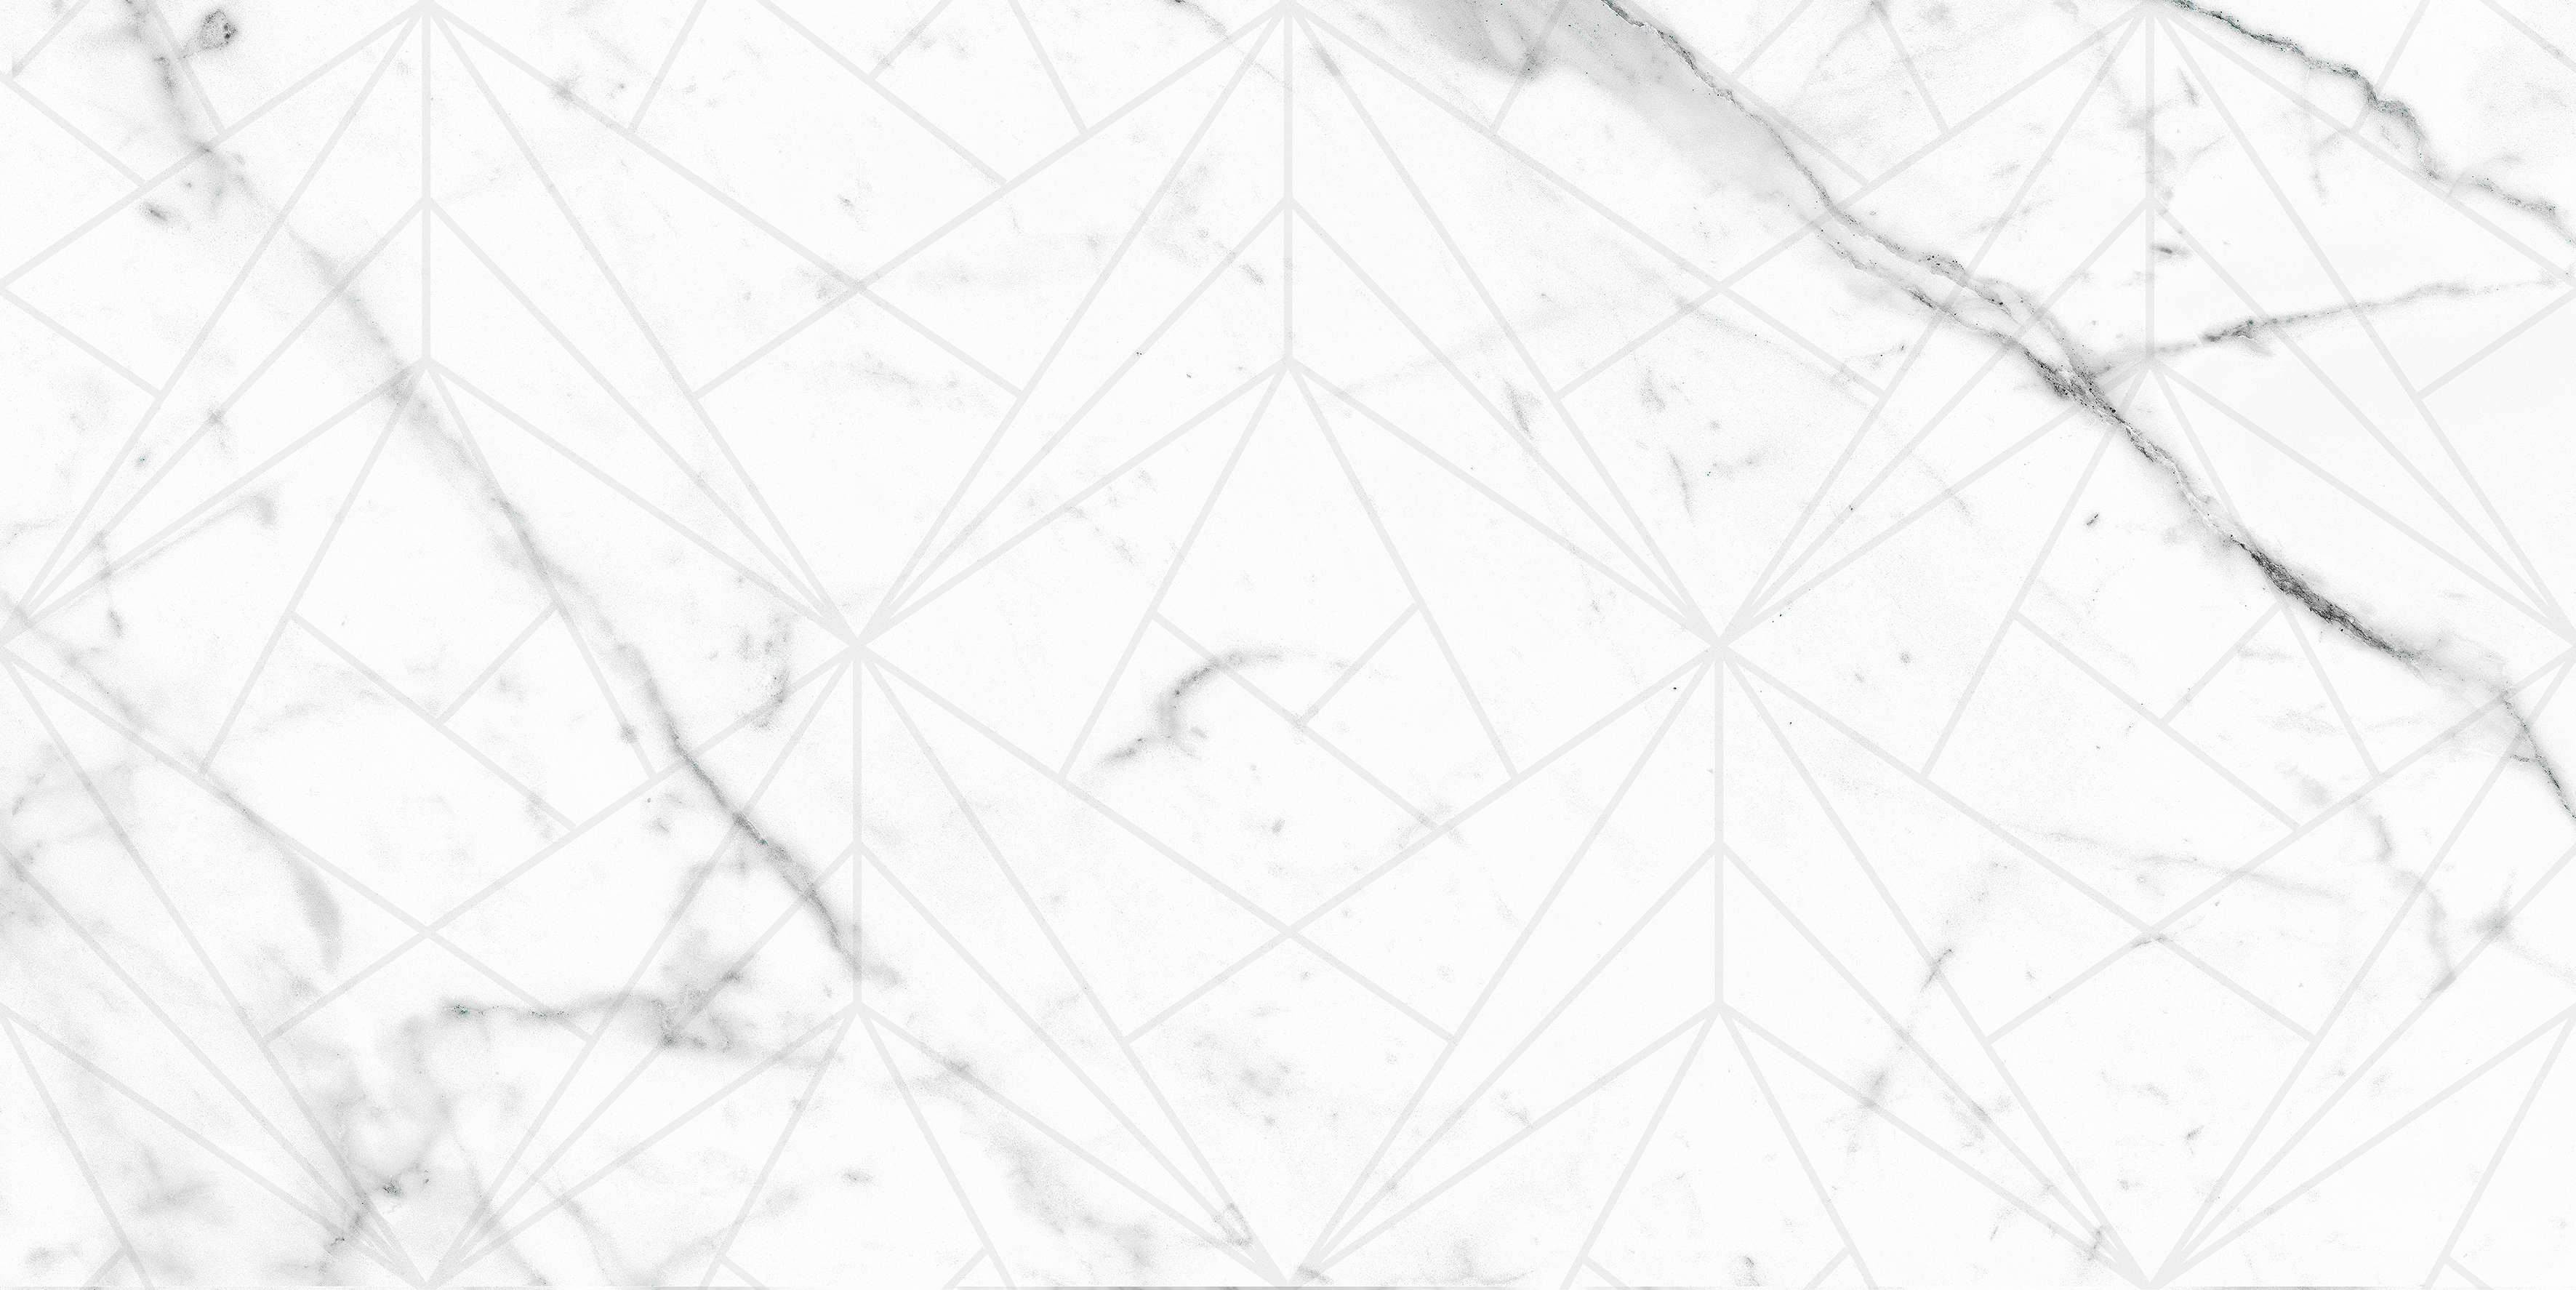  KERRANOVA  Marble Trend K-1000/MR/d01/30x60x10/S1 Carrara 